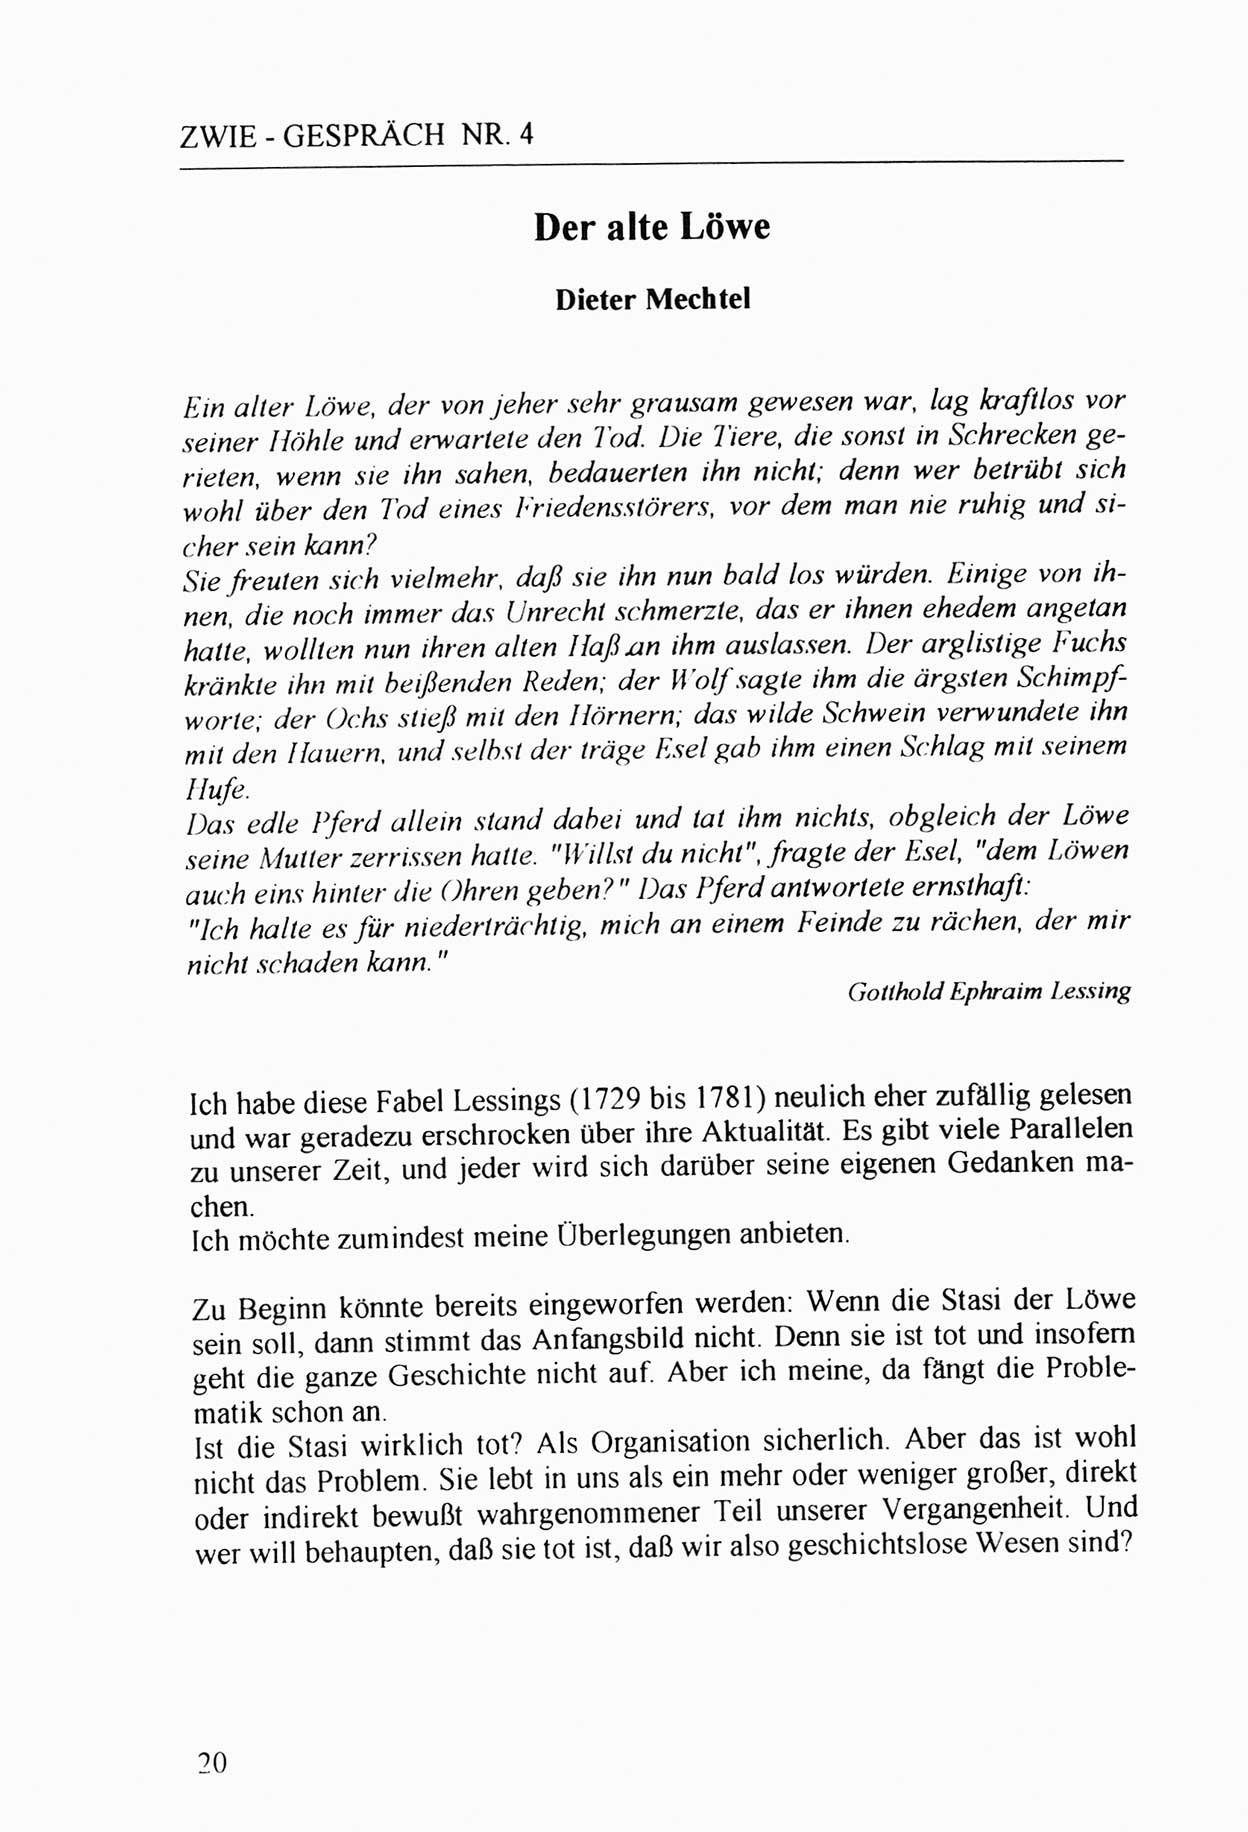 Zwie-Gespräch, Beiträge zur Aufarbeitung der Stasi-Vergangenheit [Deutsche Demokratische Republik (DDR)], Ausgabe Nr. 4, Berlin 1991, Seite 20 (Zwie-Gespr. Ausg. 4 1991, S. 20)